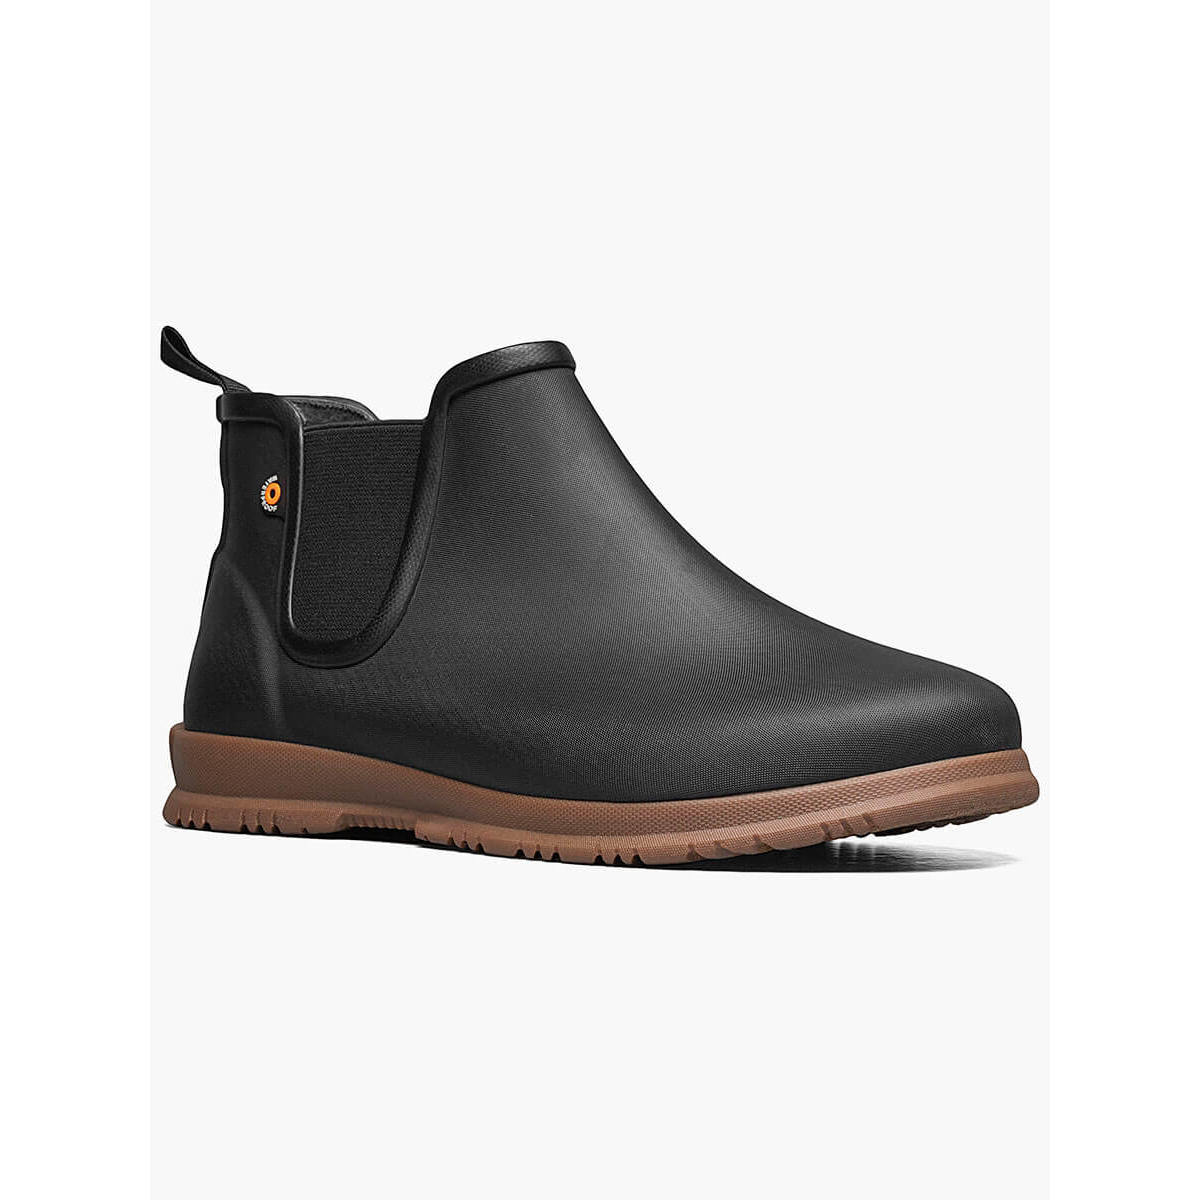 BOGS Women's Sweetpea Waterproof Slip On Rain Boots Black- 72198-001 - BLACK, 7